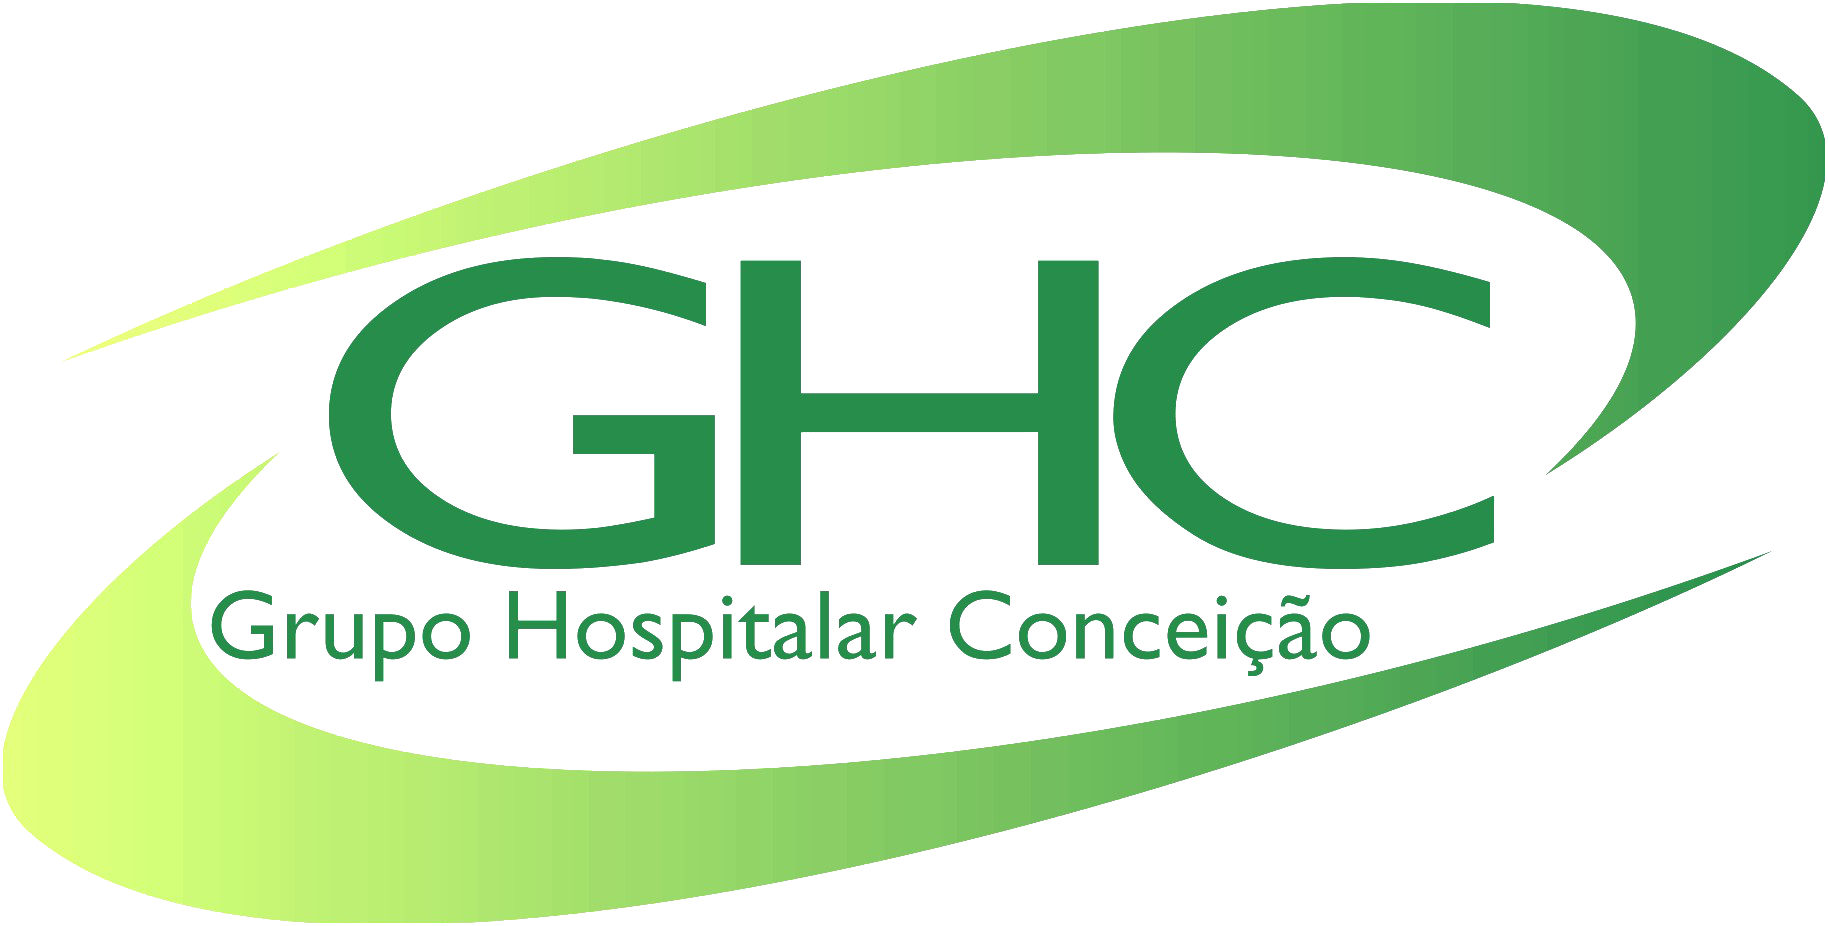 Grupo Hospitalar Conceição - GHC 2018